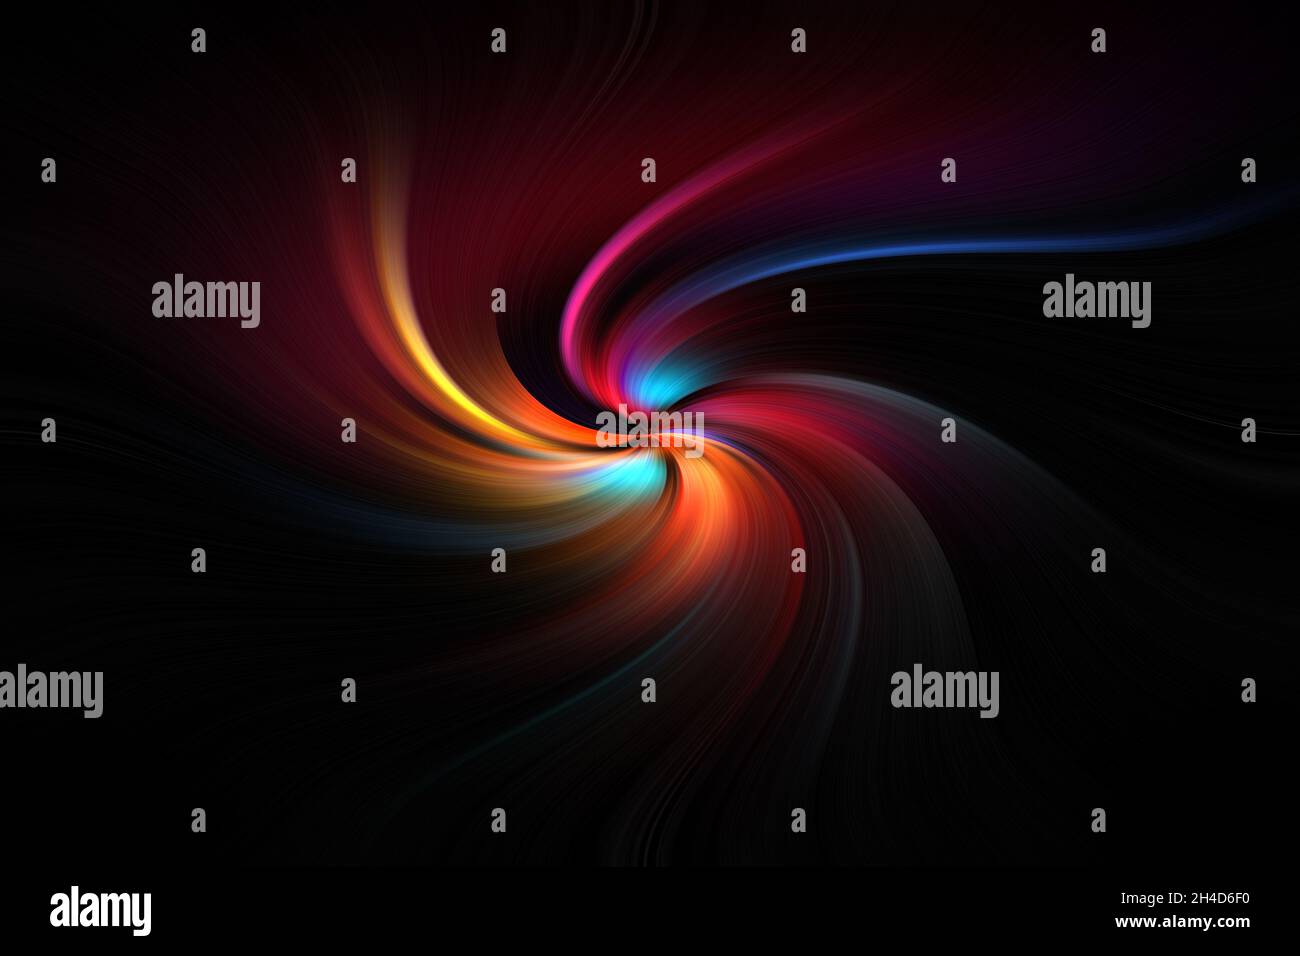 Technologie à rayures, arrière-plan hi-tech ou science-fiction, image abstraite générée par ordinateur.Géométrie fractale : spirale noire, bleue, jaune, rouge avec rayon gondolé Banque D'Images